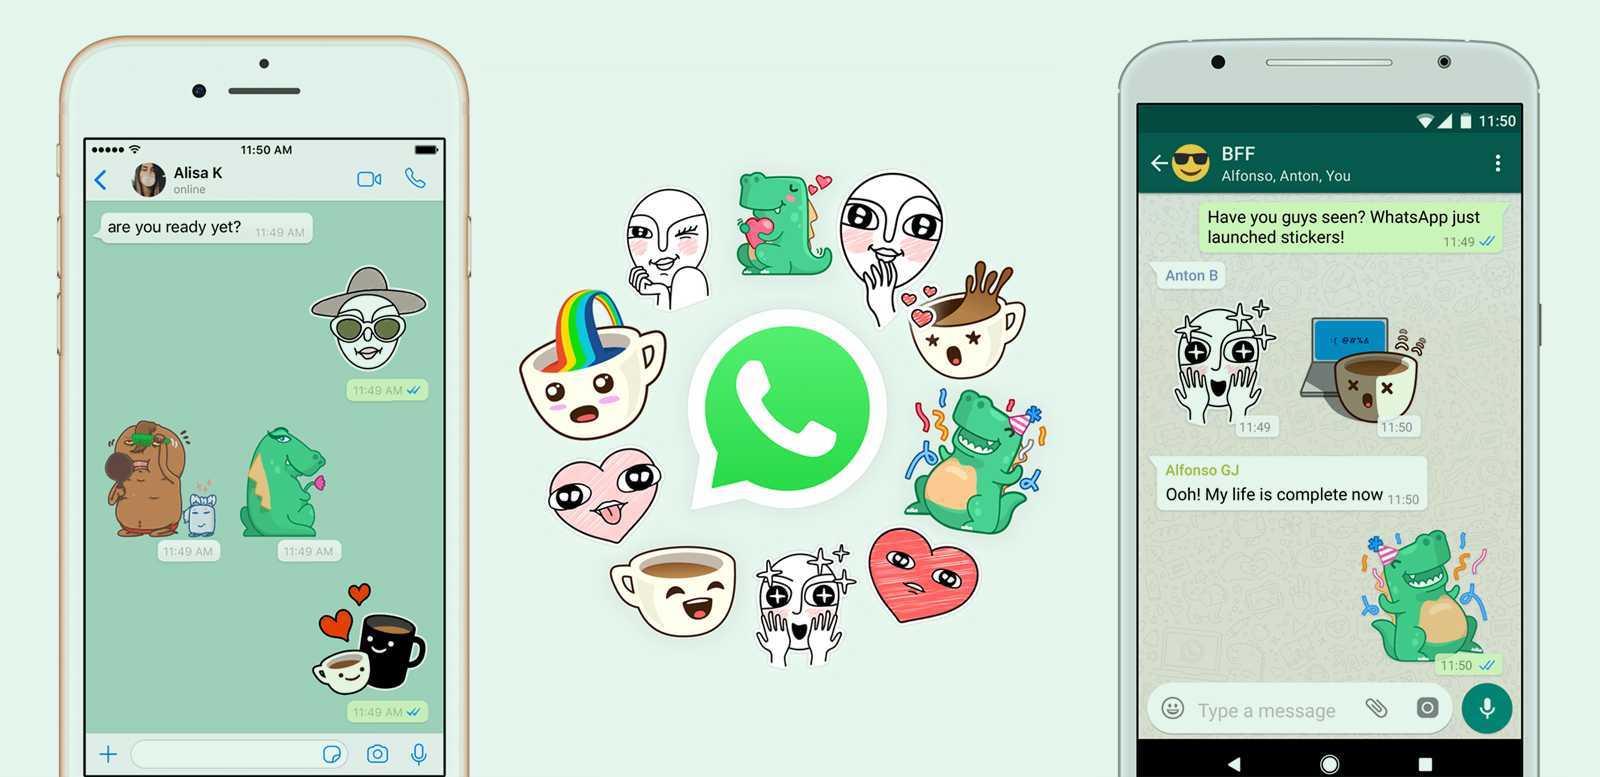 Один из самых популярных на сегодня мессенджеров WhatsApp постоянно совершенствовался, получая все новые и новые функции Однако появления стикеров пользоват